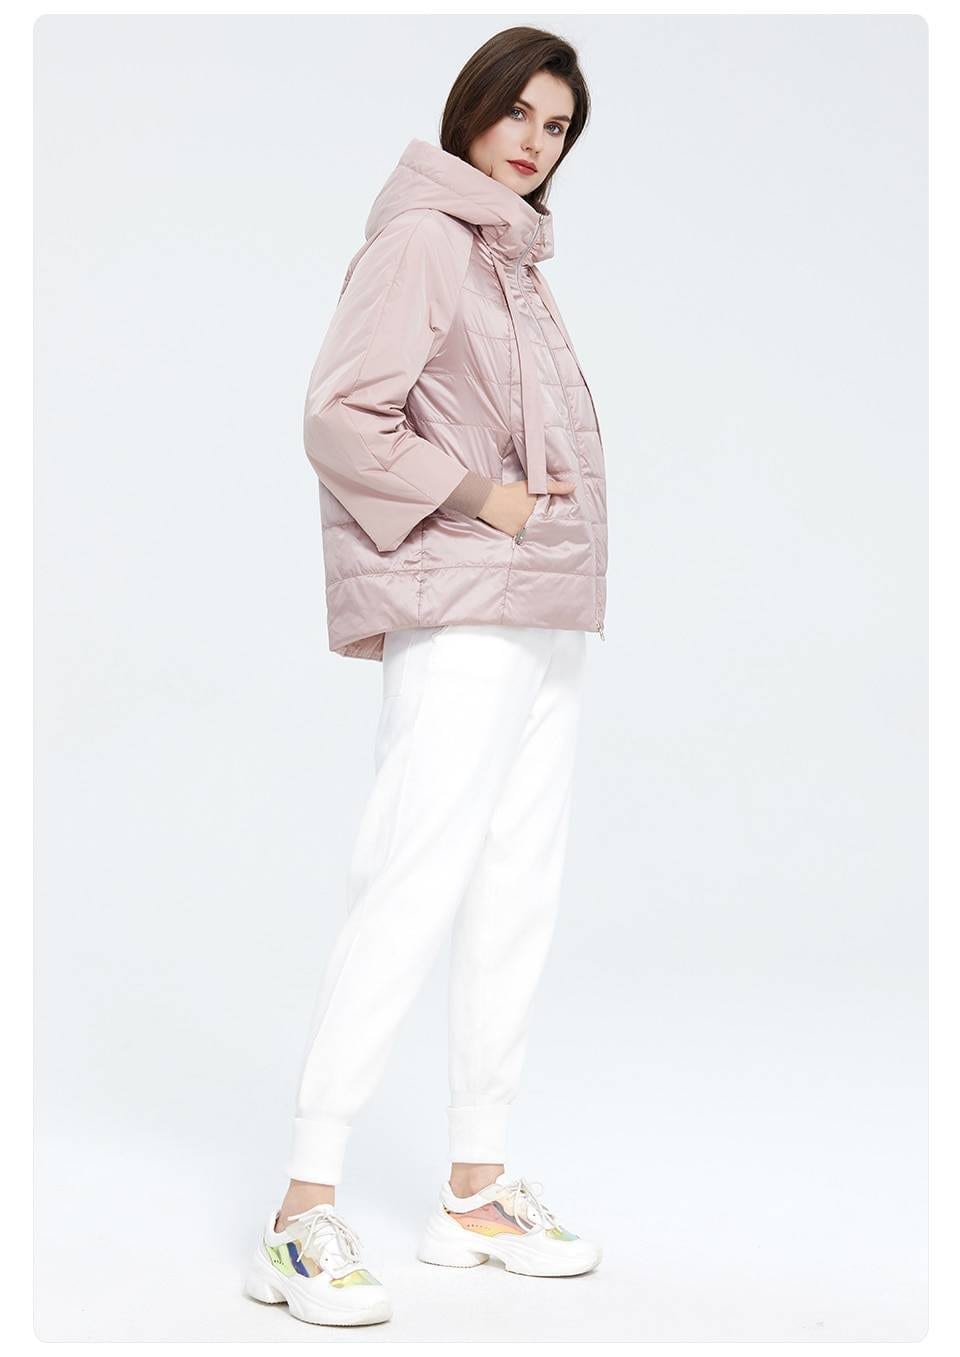 Elegant Short Warm Thin Coat Jacket | Uniqistic.com